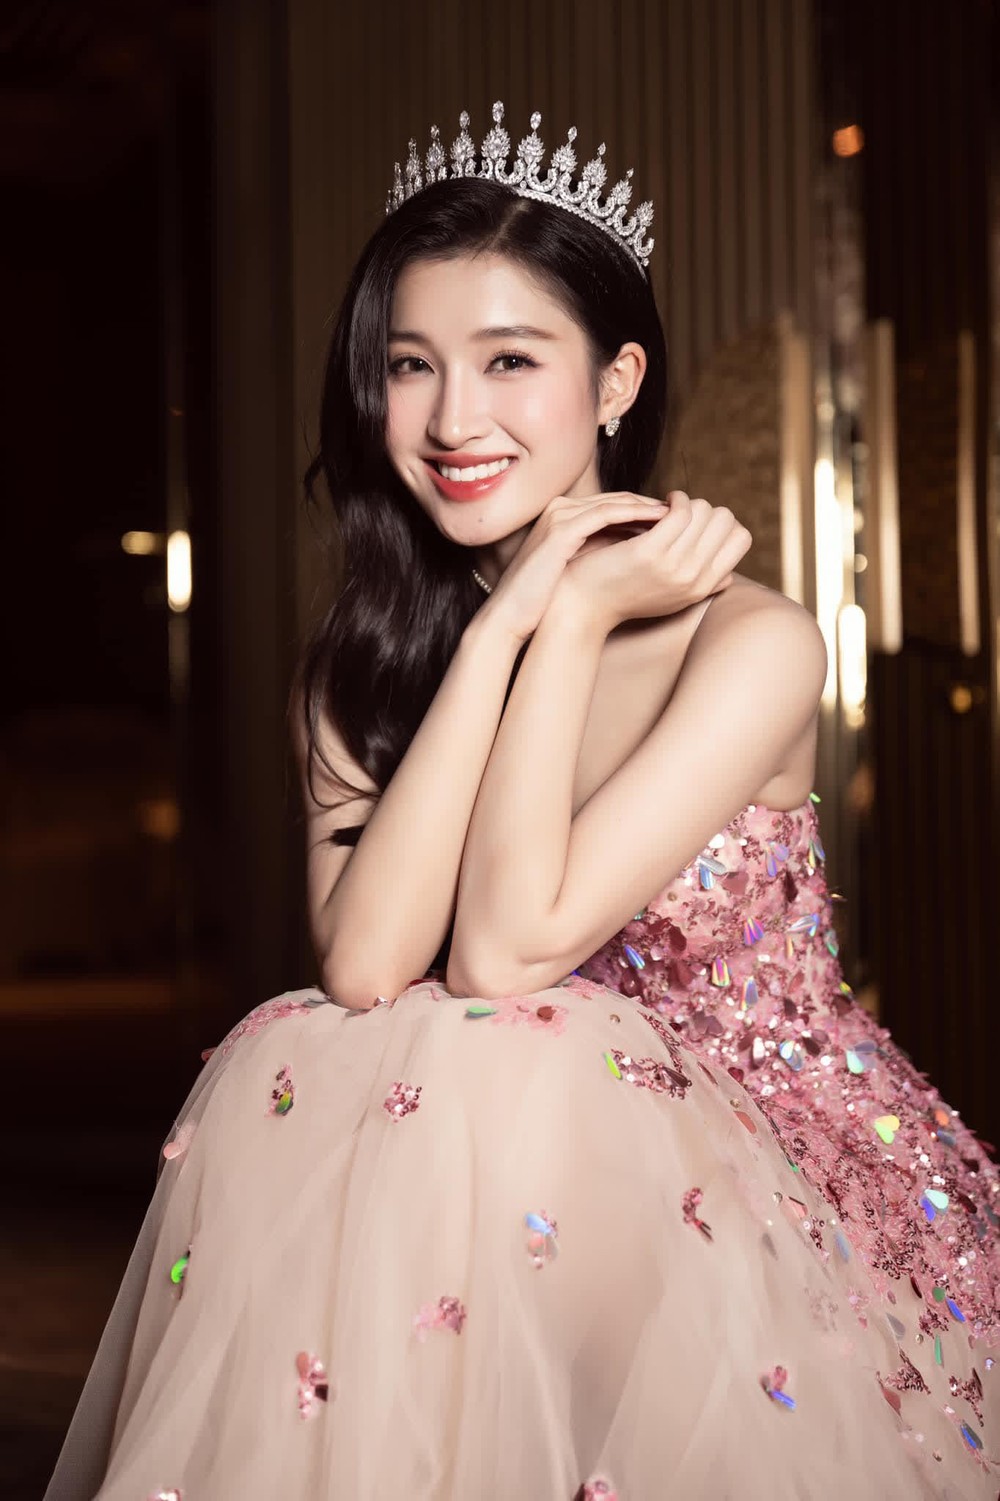 Biến động của Top 3 Miss World Vietnam trong chưa đầy 1 năm: Hoa hậu Mai Phương dính thị phi liên tục, bị Á hậu vượt mặt? - Ảnh 9.